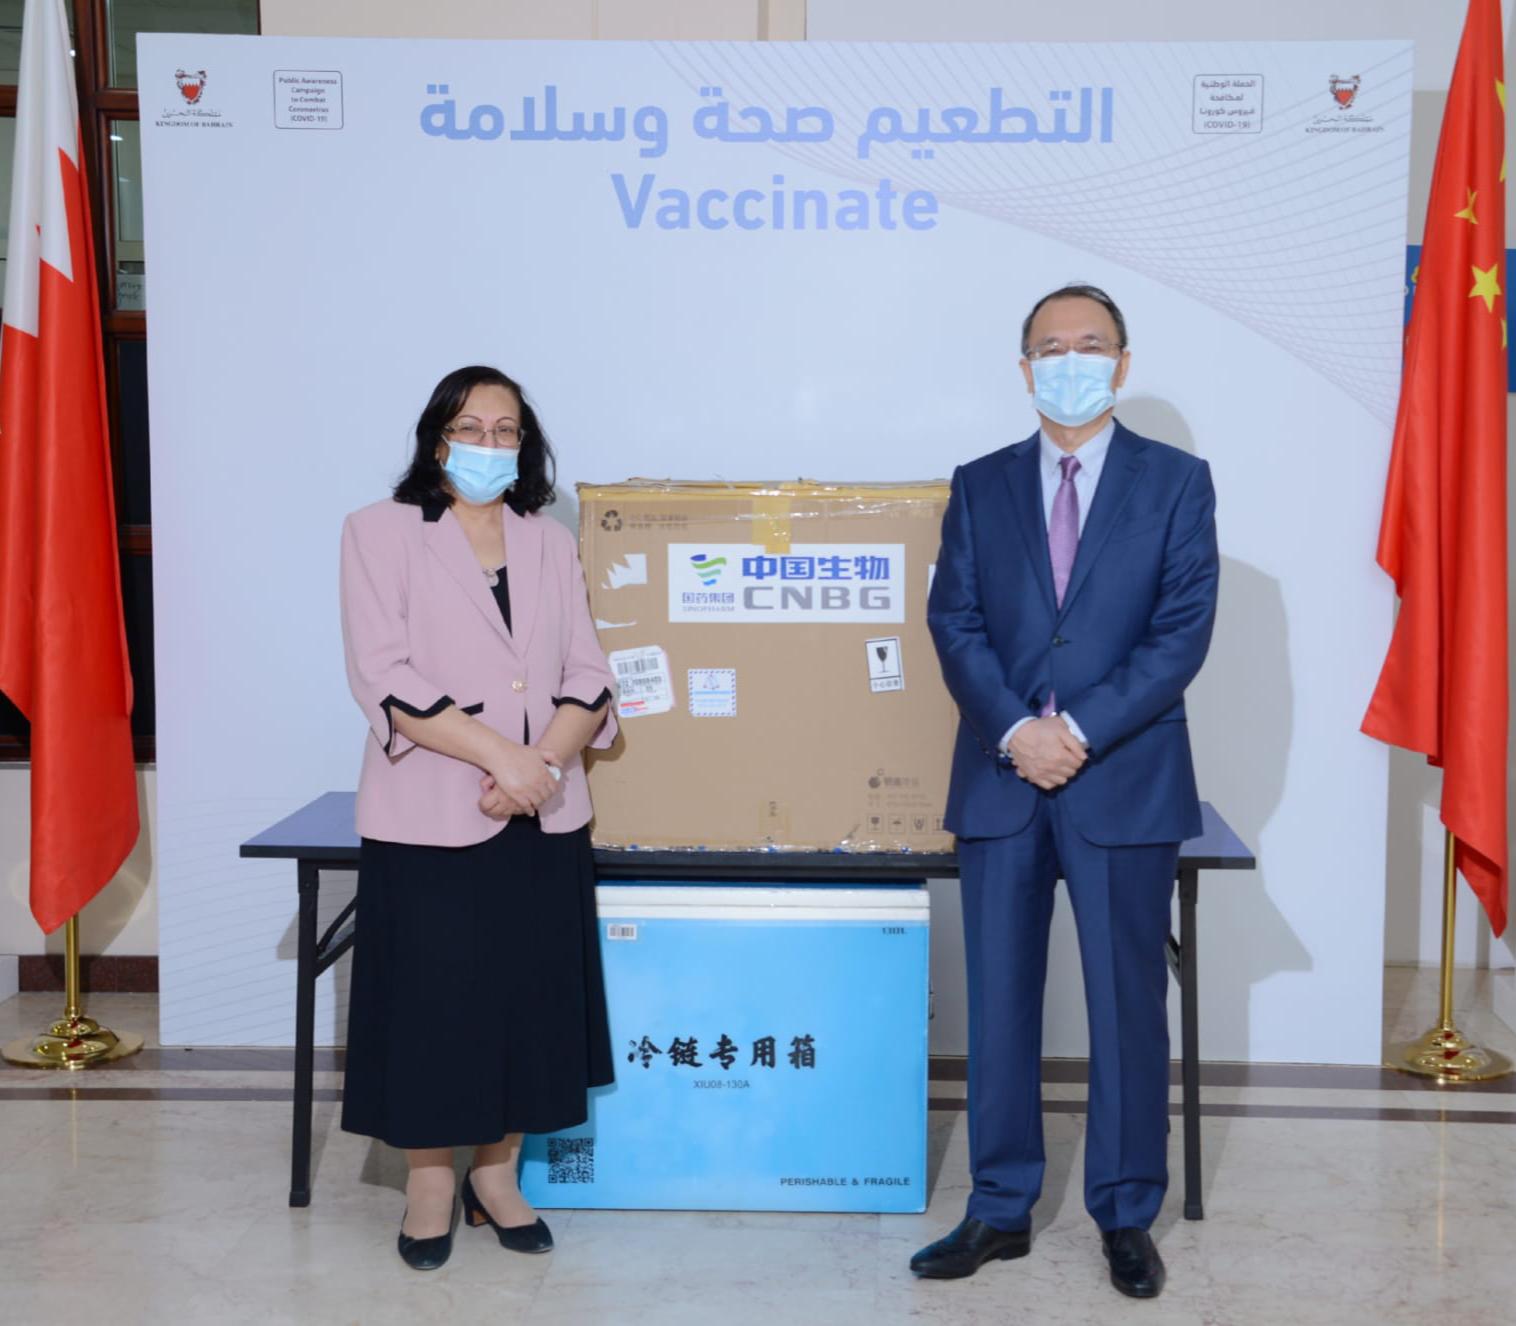 الصحة تتسلم شحنة من 300 ألف جرعة من التطعيم الصيني "سينوفارم" المضاد لفيروس كورونا (كوفيد-19)